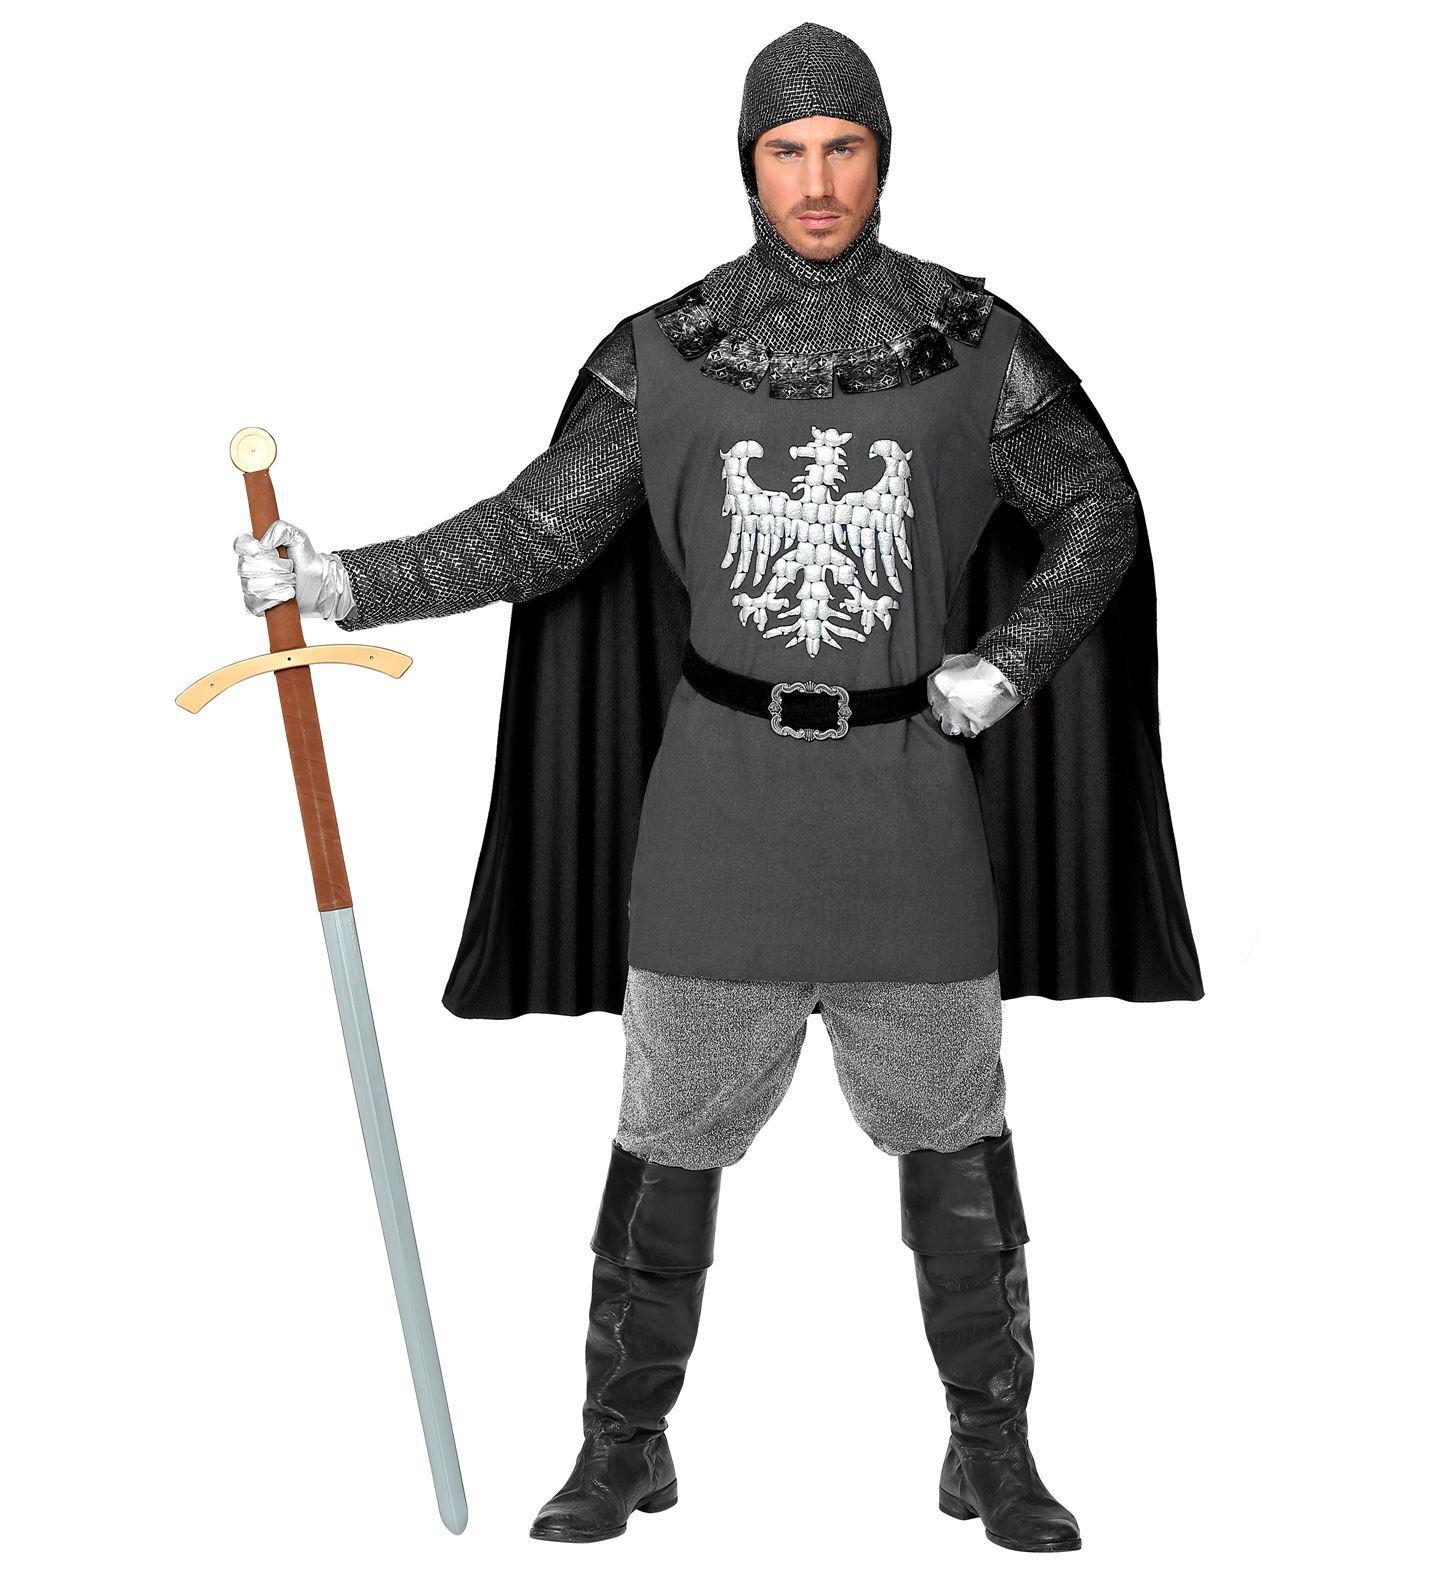 Word de held van je eigen legende met ons stoere volwassen ridder kostuum